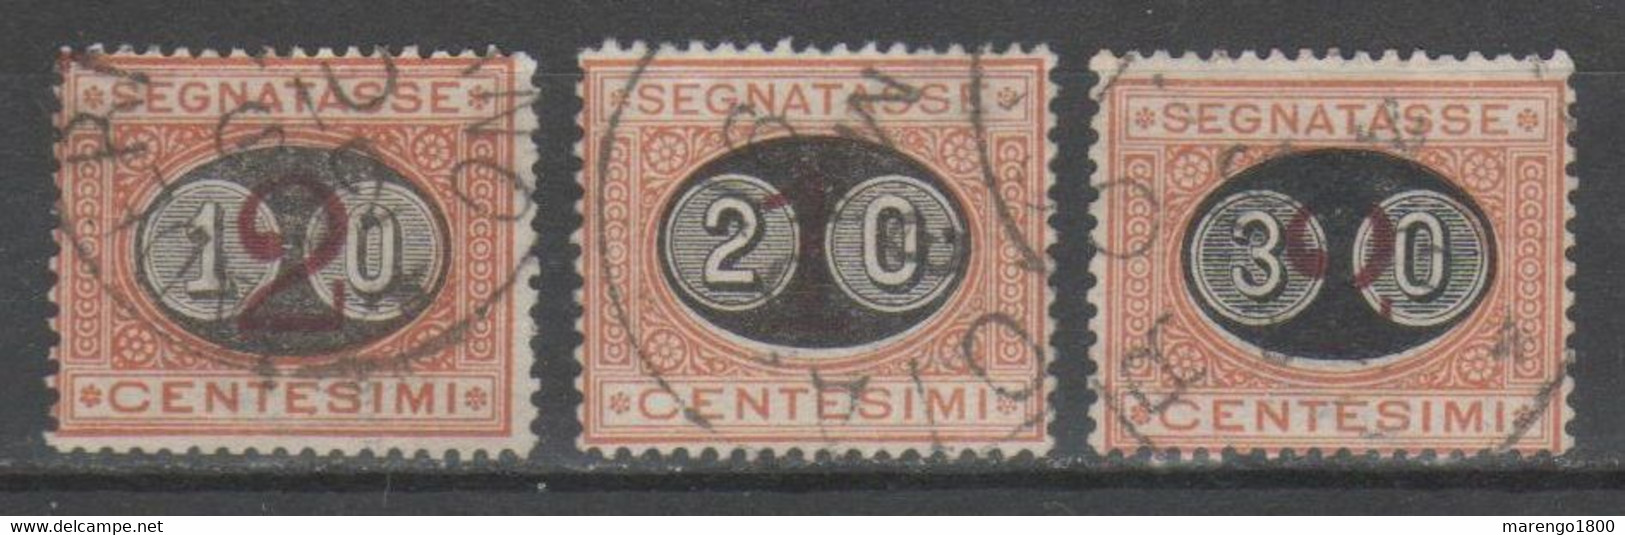 ITALIA 1890-91 - Segnatasse Soprastampati ("Mascherine")            (g8324) - Taxe